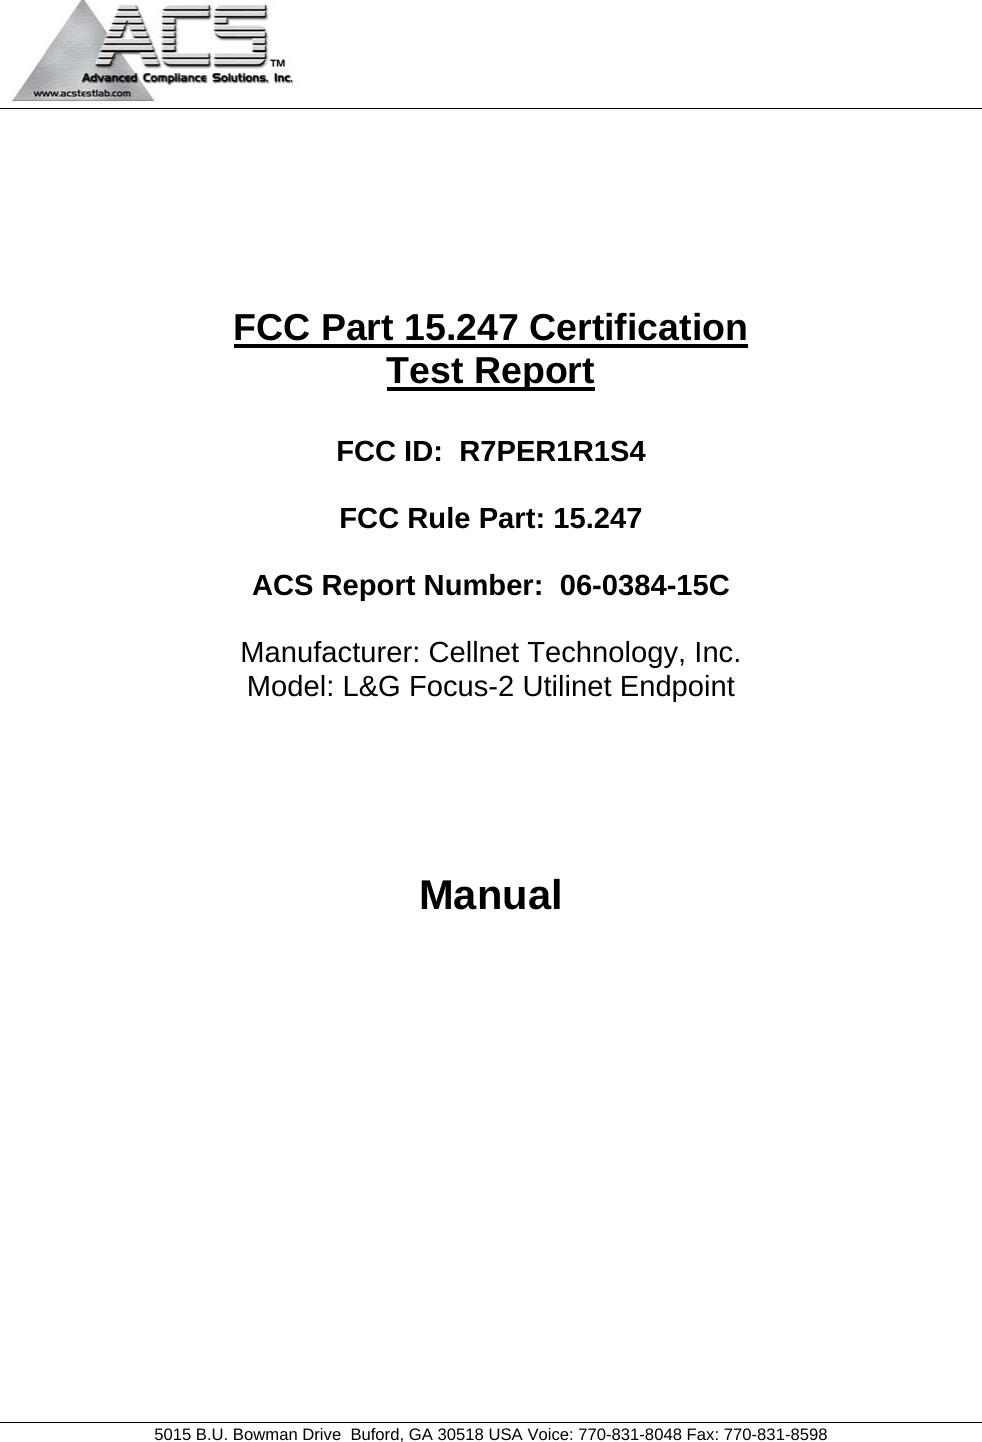                                             5015 B.U. Bowman Drive  Buford, GA 30518 USA Voice: 770-831-8048 Fax: 770-831-8598       FCC Part 15.247 Certification Test Report  FCC ID:  R7PER1R1S4  FCC Rule Part: 15.247  ACS Report Number:  06-0384-15C   Manufacturer: Cellnet Technology, Inc. Model: L&amp;G Focus-2 Utilinet Endpoint     Manual 